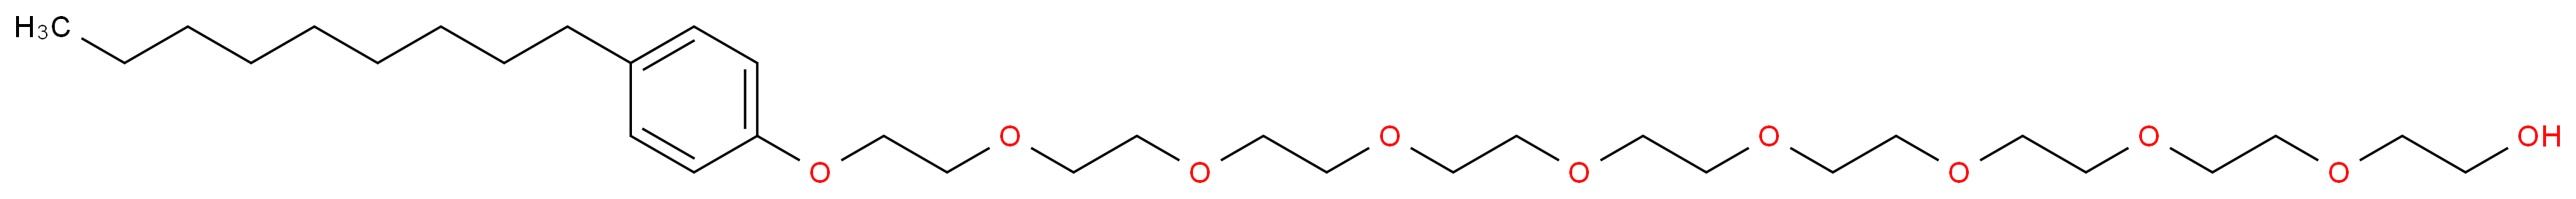 Nonoxynol-9_Molecular_structure_CAS_26571-11-9)